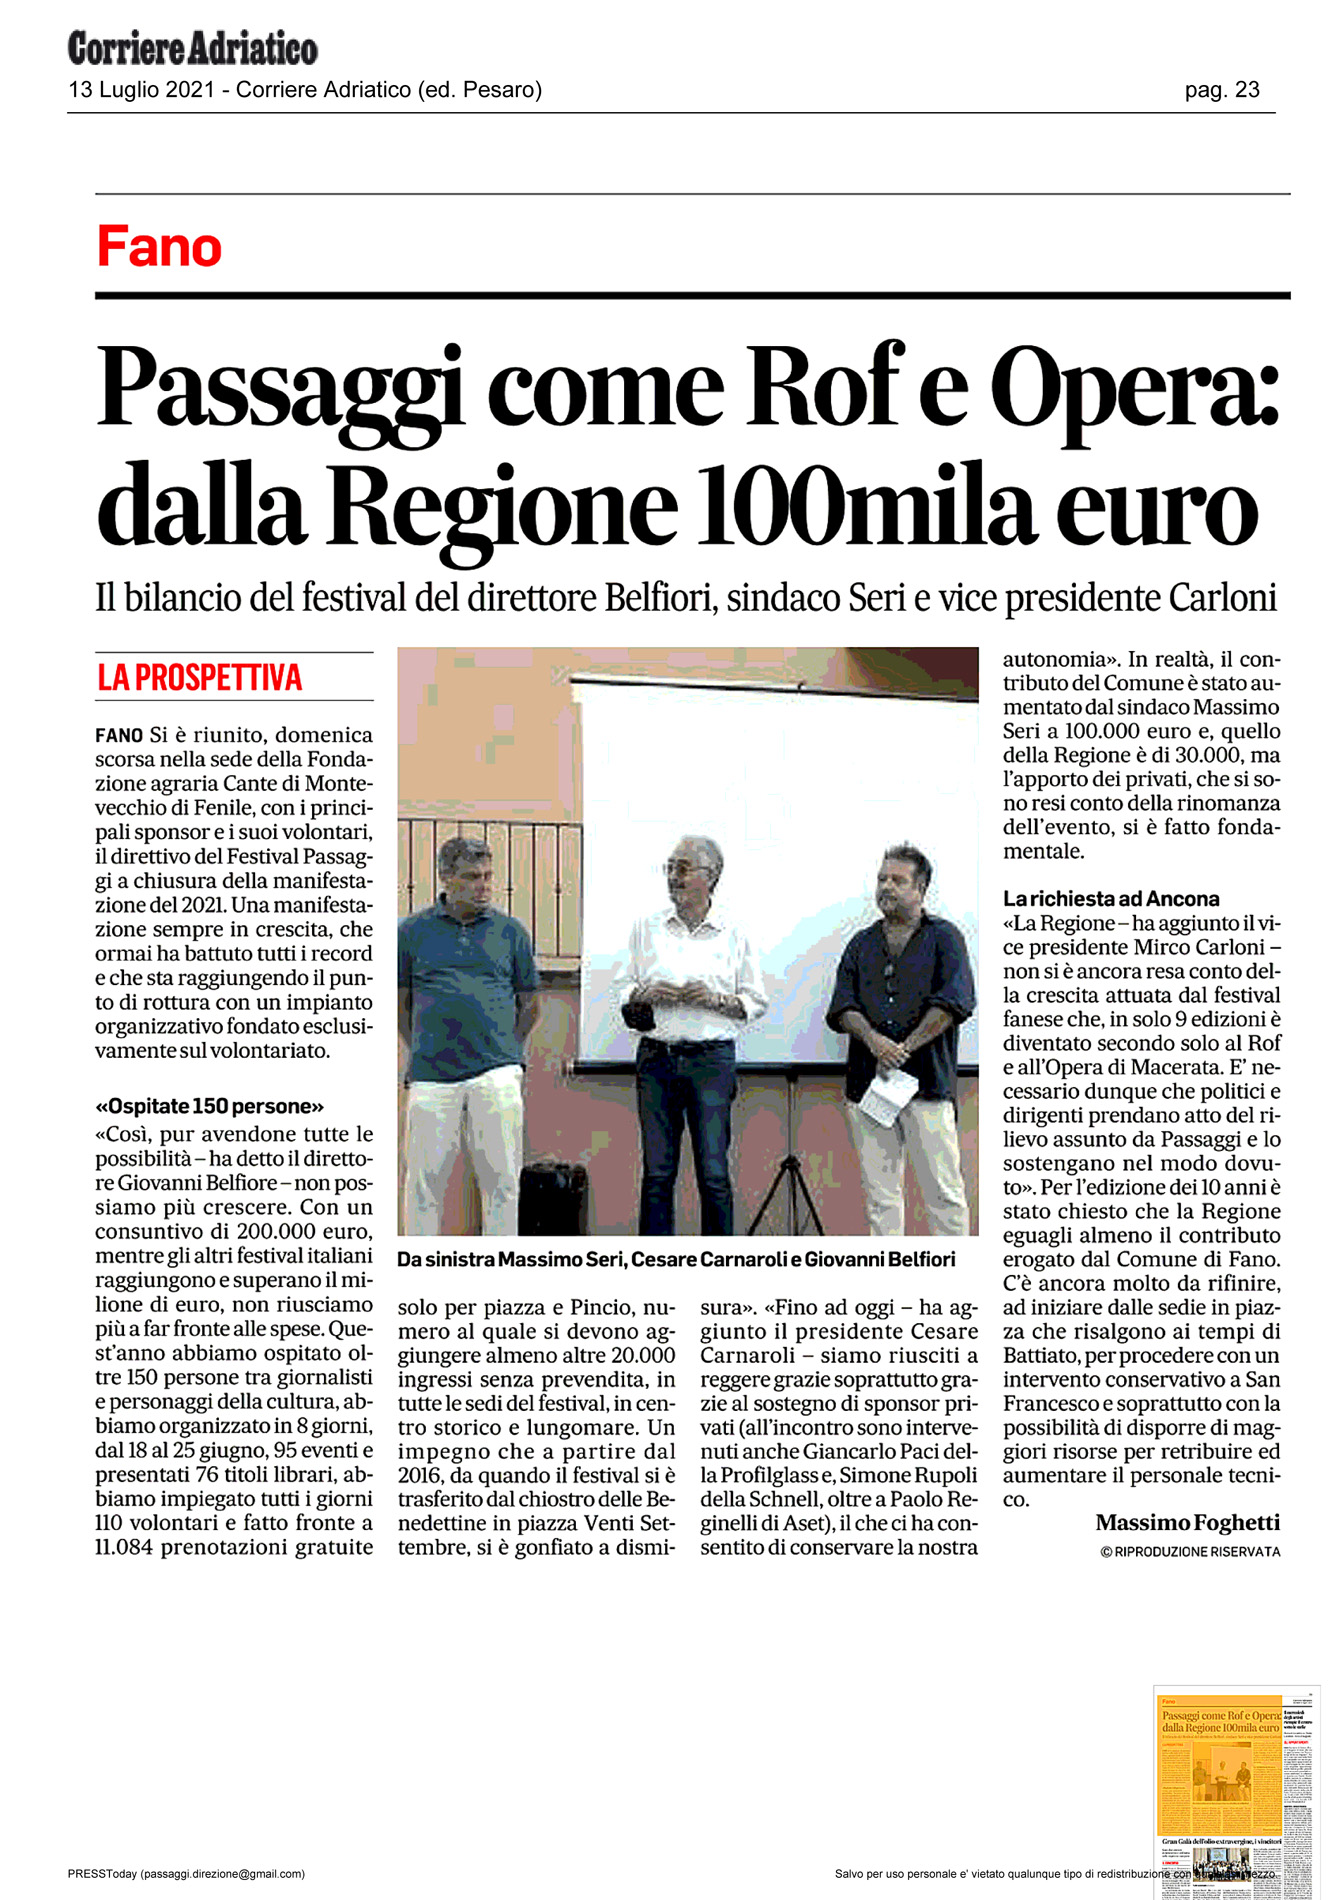 Corriere_Adriatico_passaggi-come-rof-e-opera-dalla-regione-100mila-euro